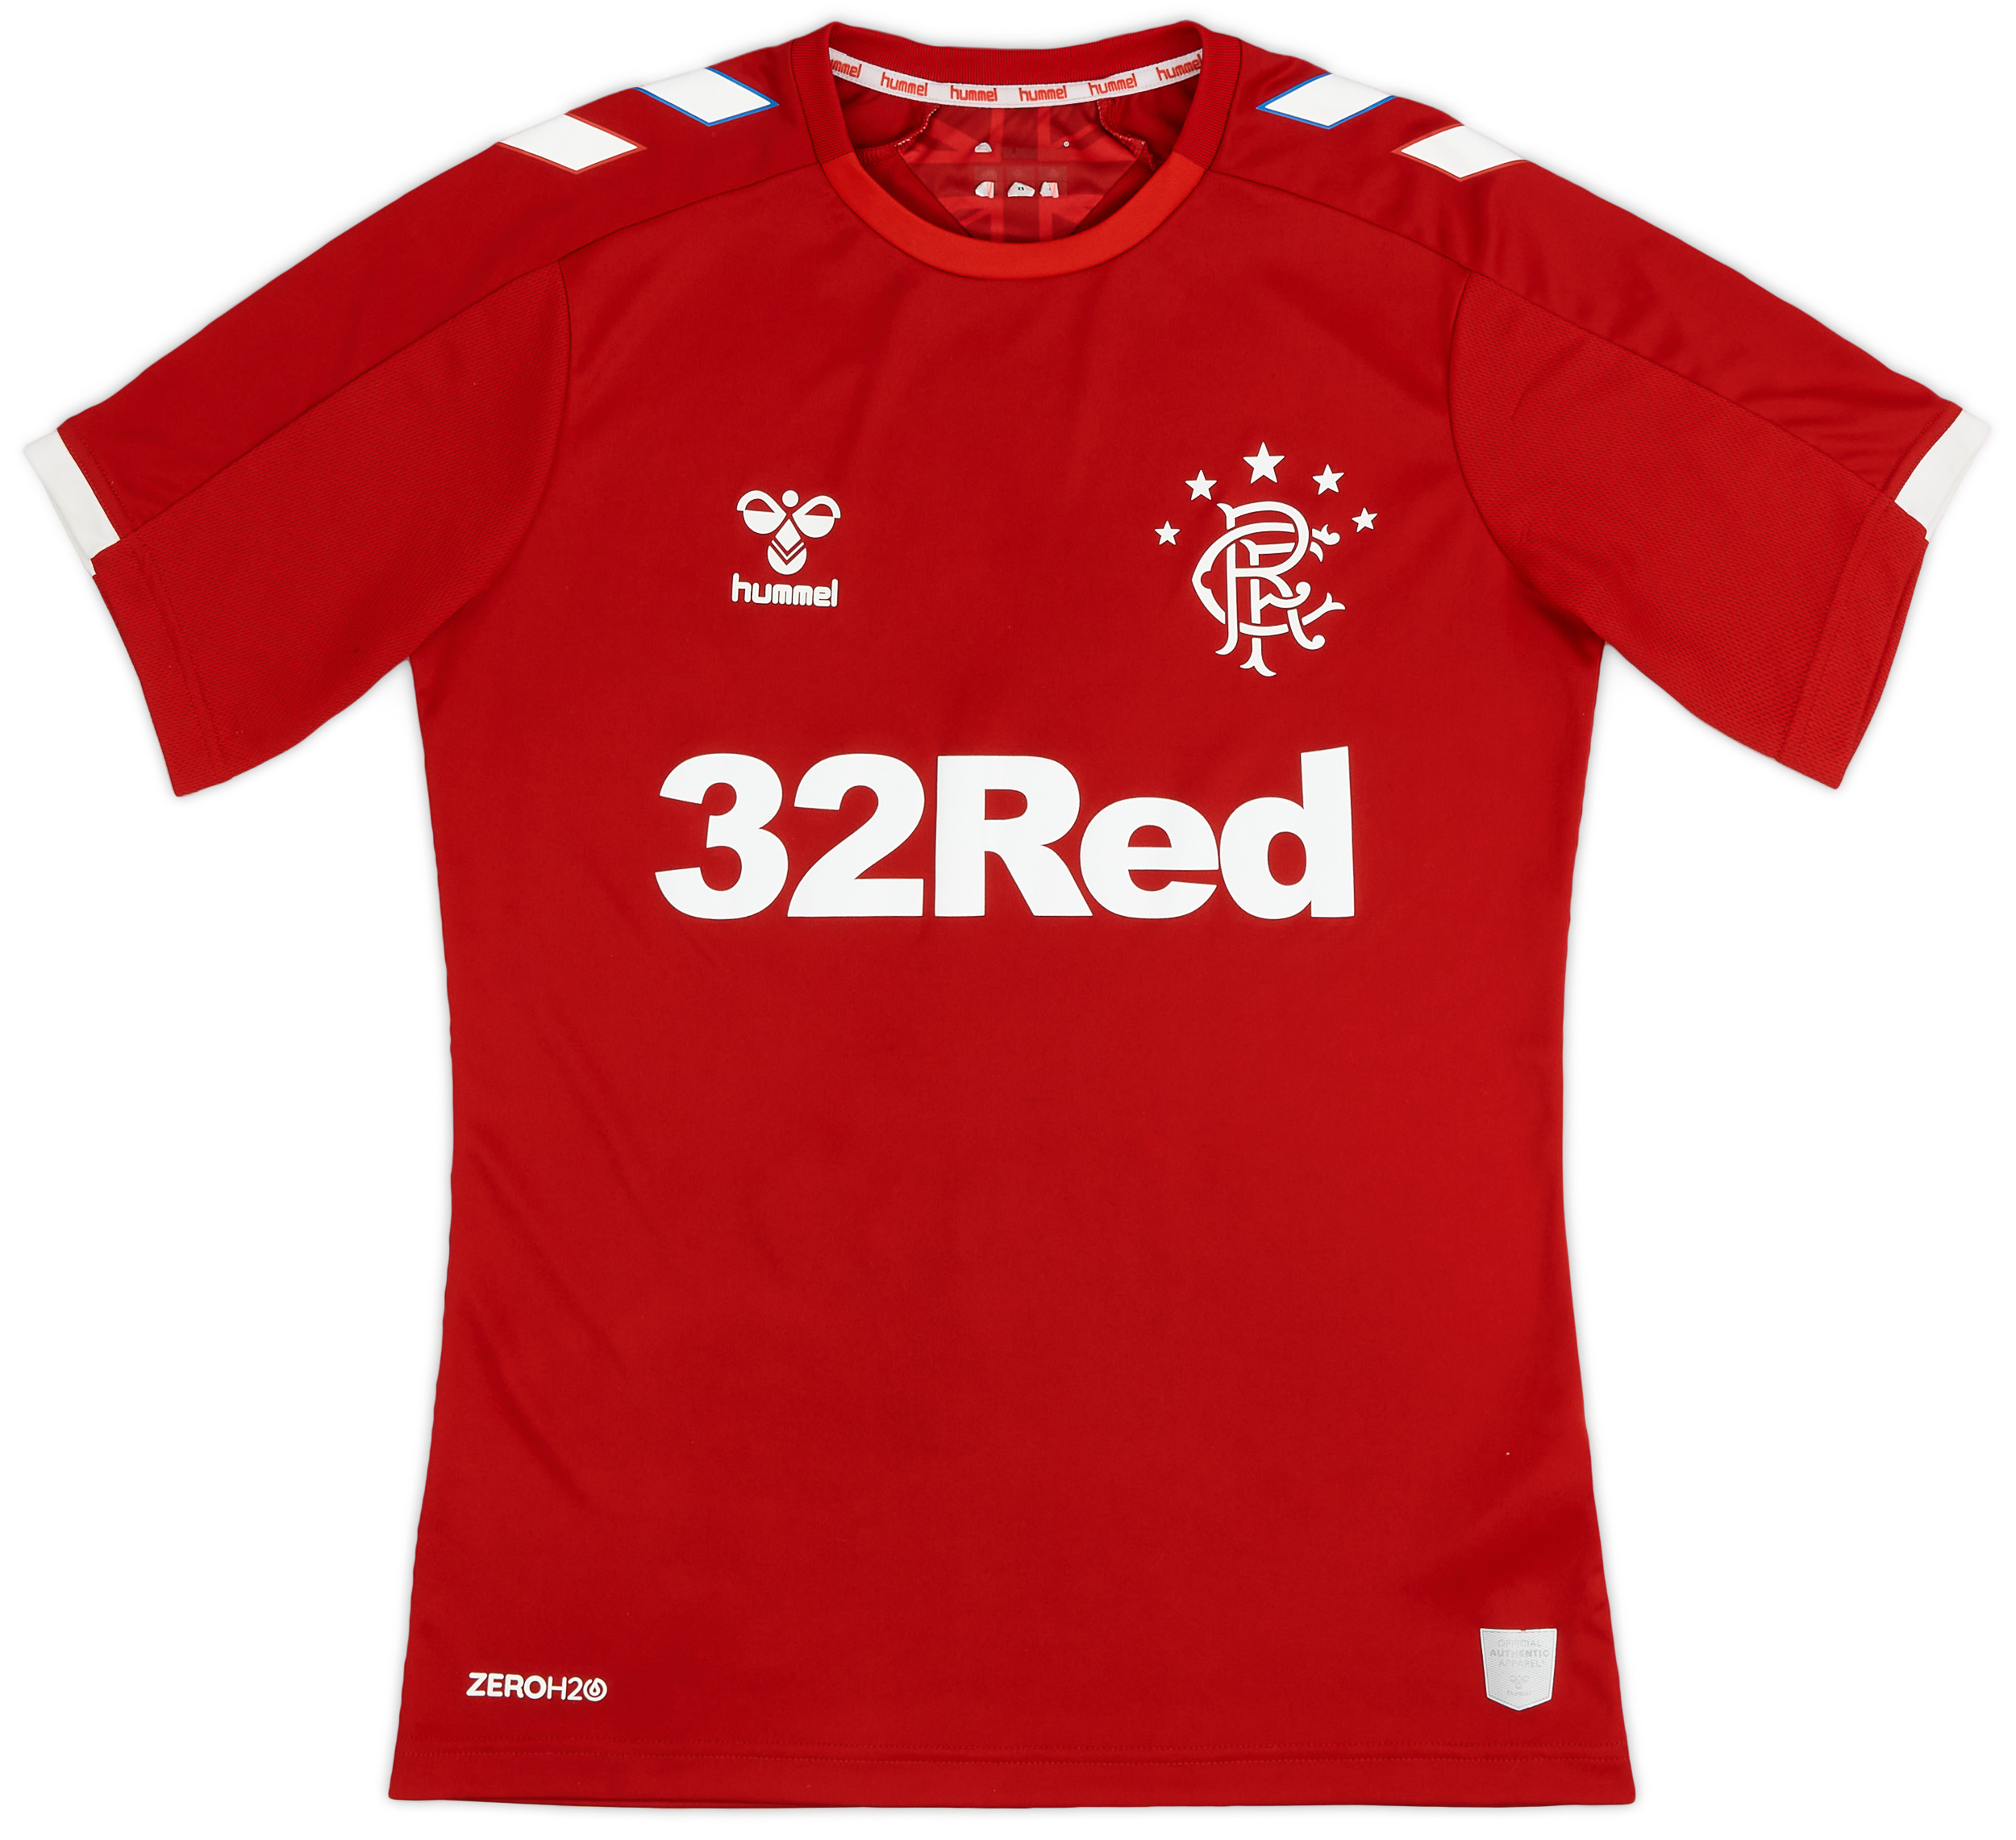 2019-20 Rangers Third Shirt - 8/10 - ()